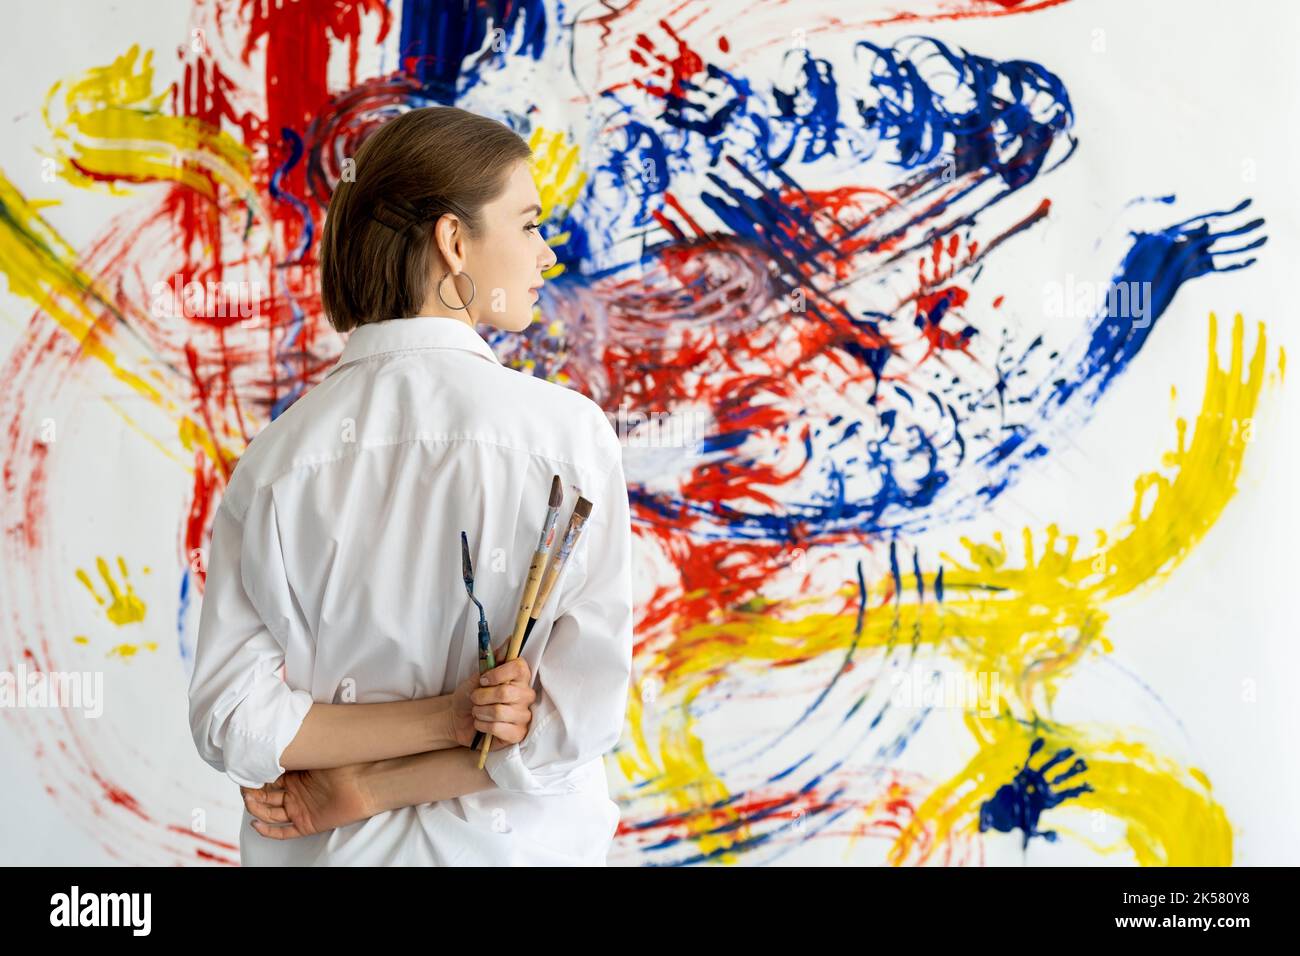 art thérapie main peinture femme avec mur coloré Banque D'Images